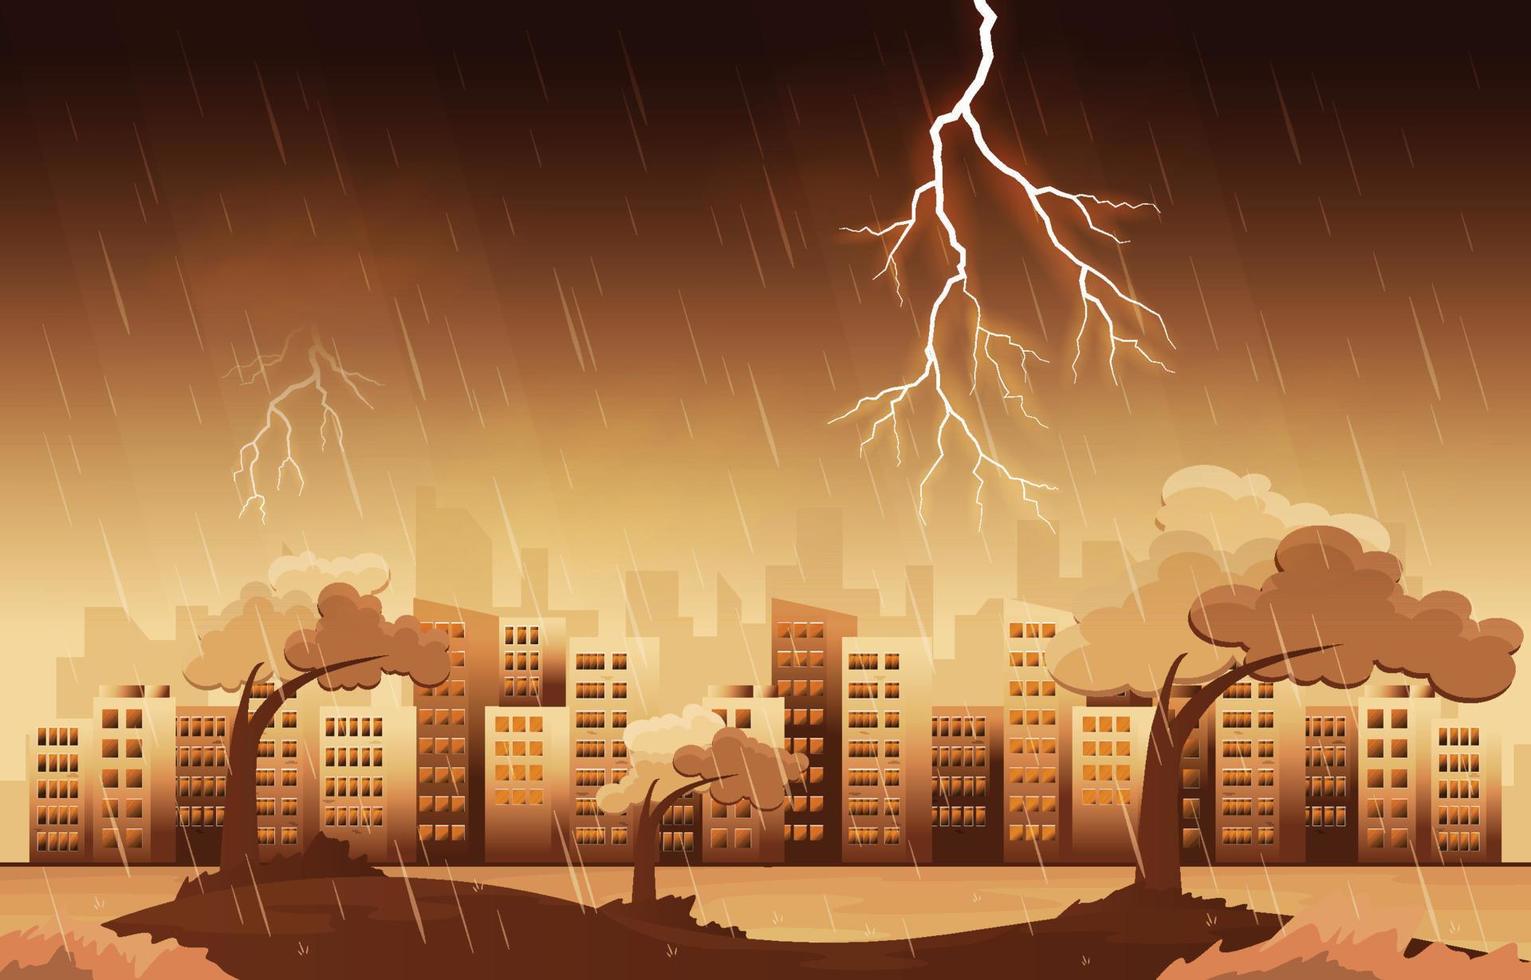 trueno tormenta relámpago fuerte lluvia ciudad edificio horizonte paisaje urbano ilustración vector